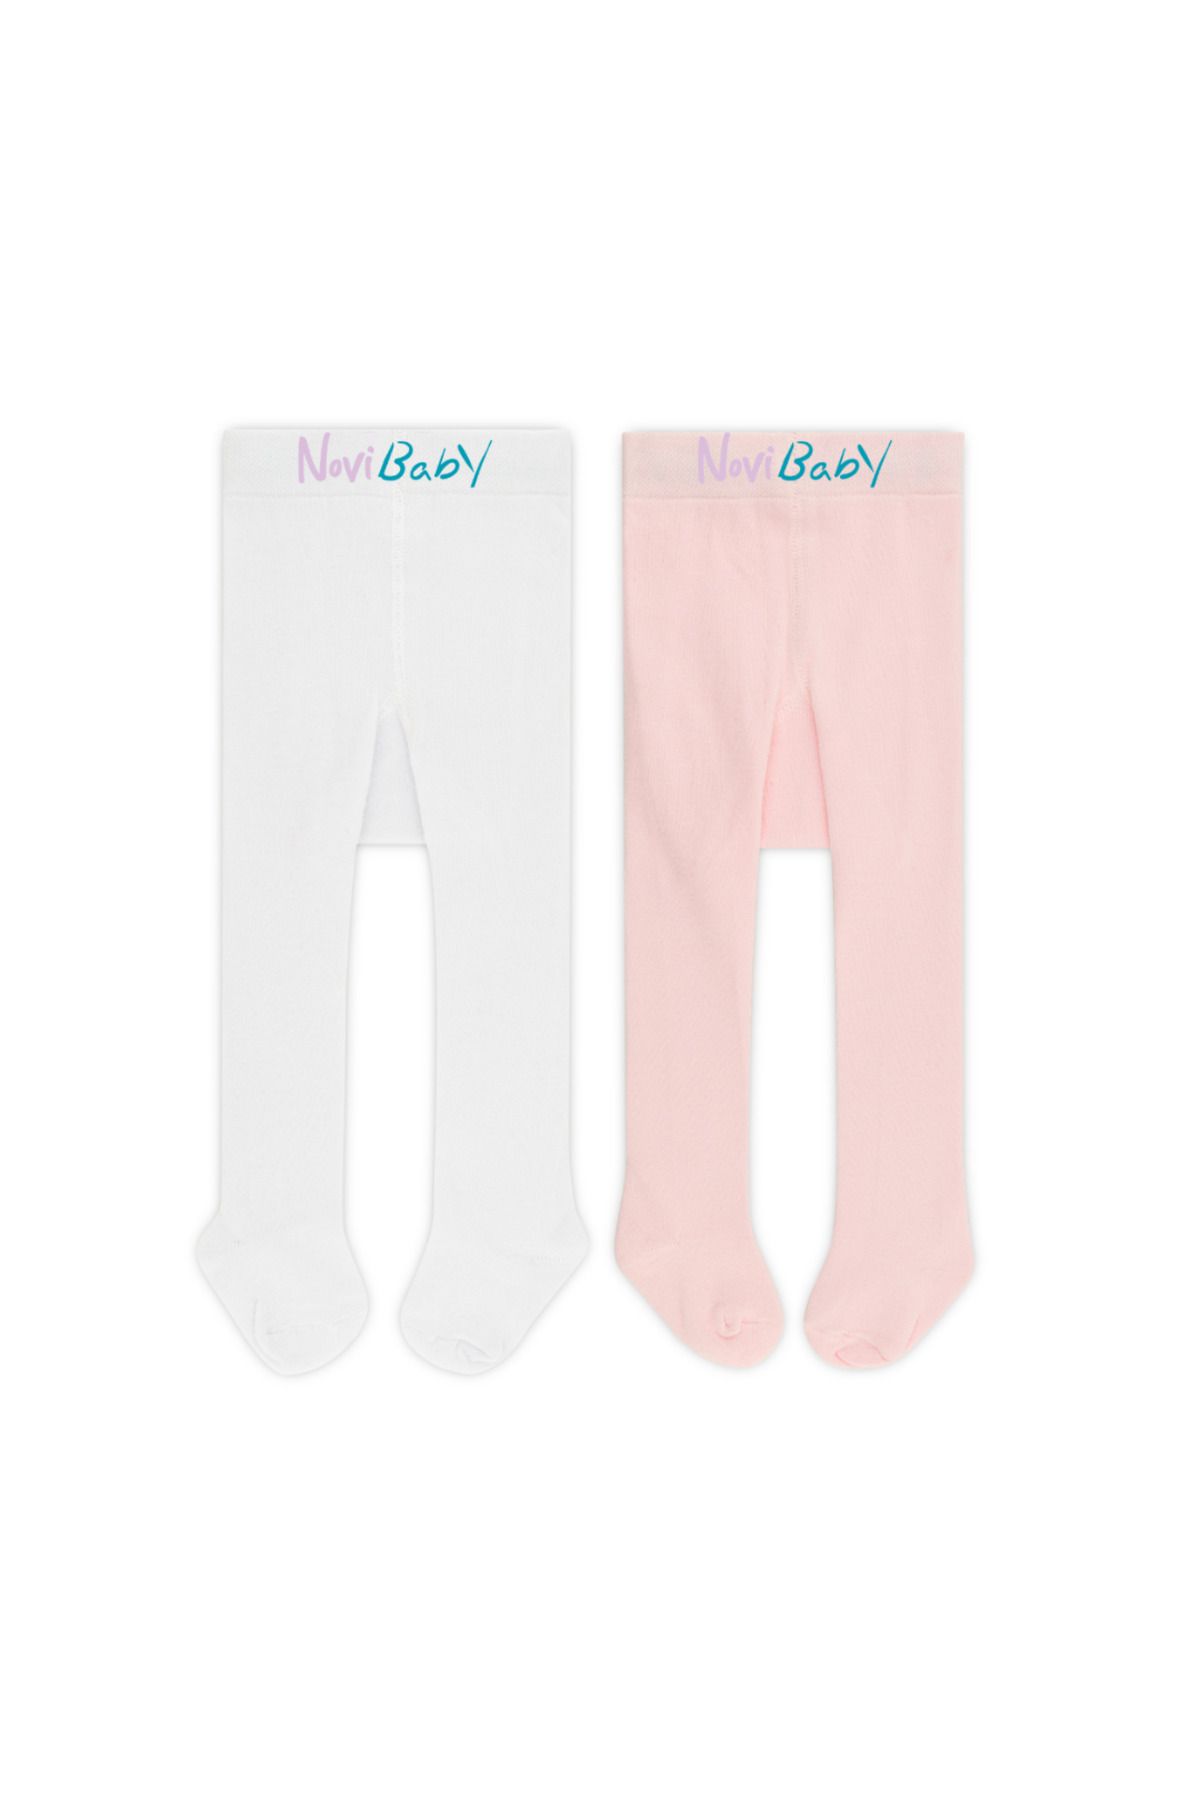 Novibaby 2'li Bebek Pamuklu Külotlu Çorap, Çocuk Yenidoğan Pamuk Kız Erkek Okul Çorabı, Beyaz Ekru Pembe